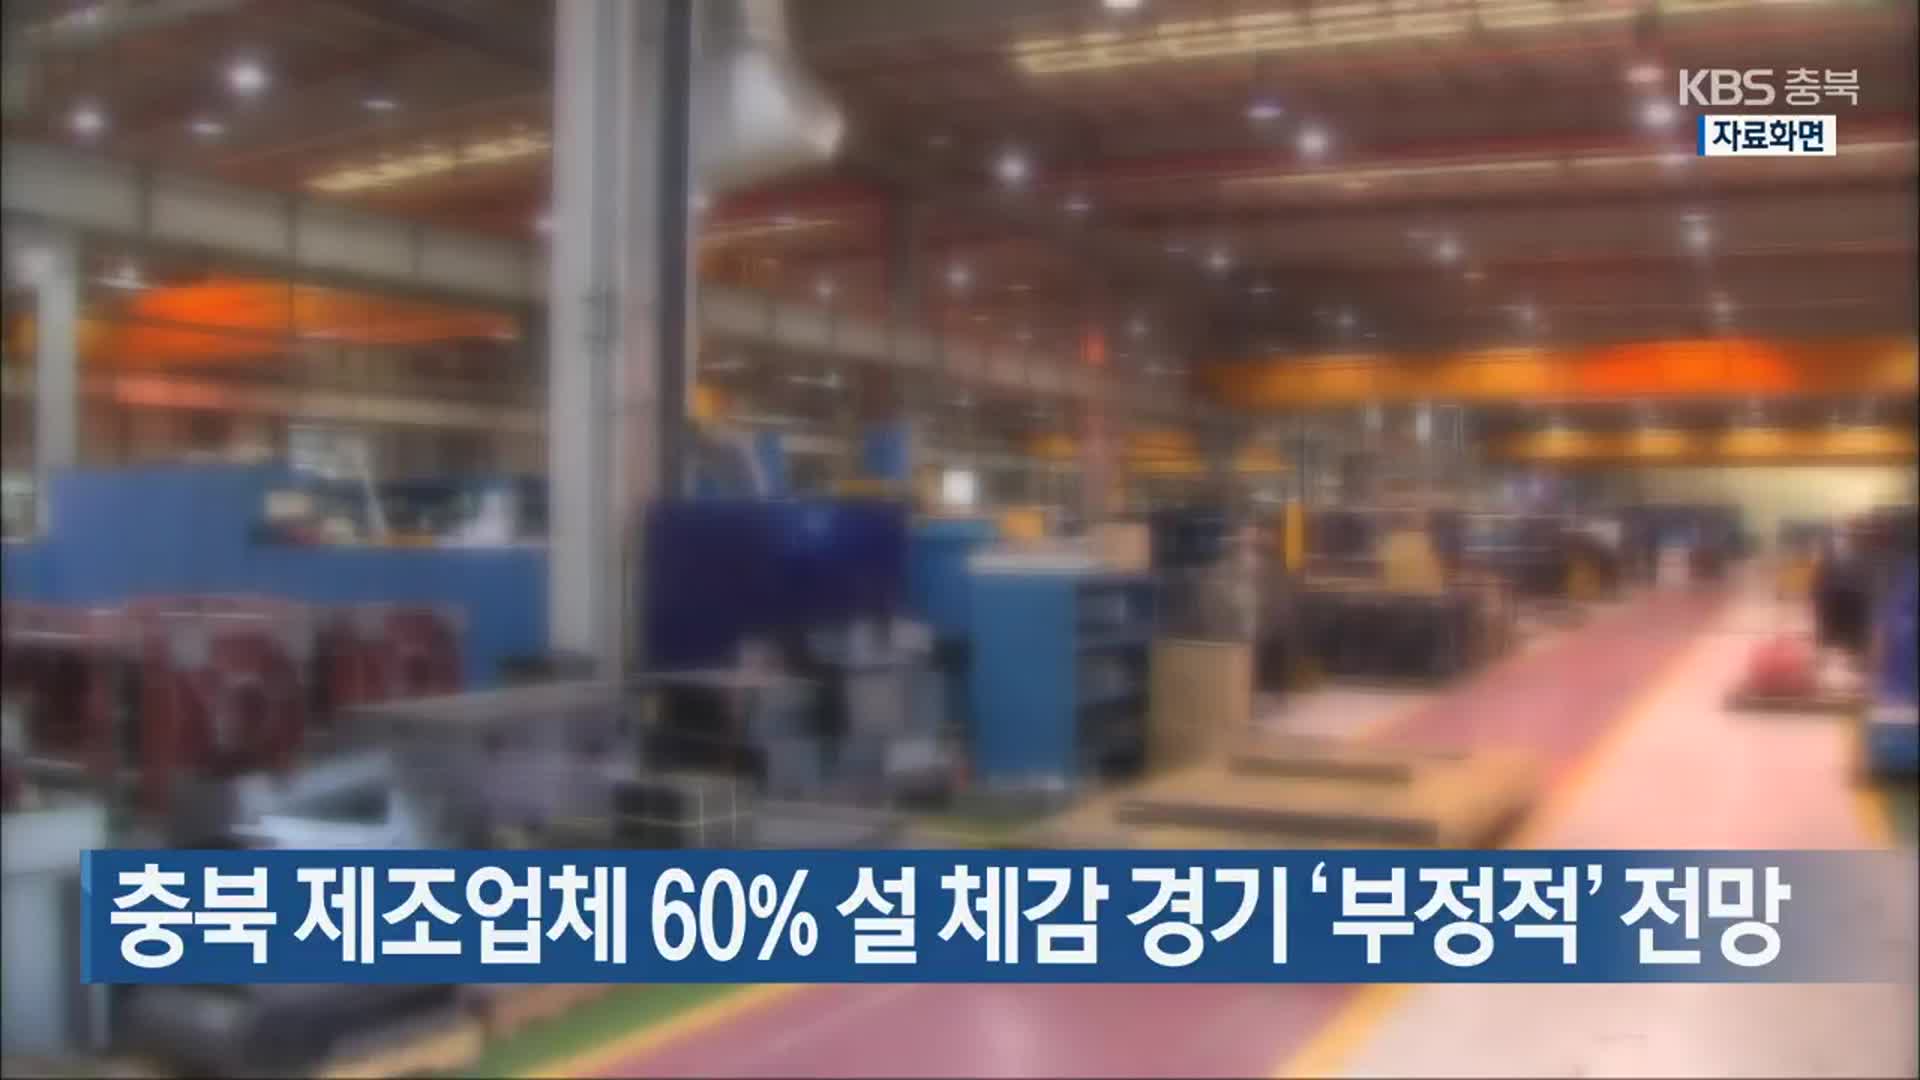 충북 제조업체 60% 설 체감 경기 ‘부정적’ 전망